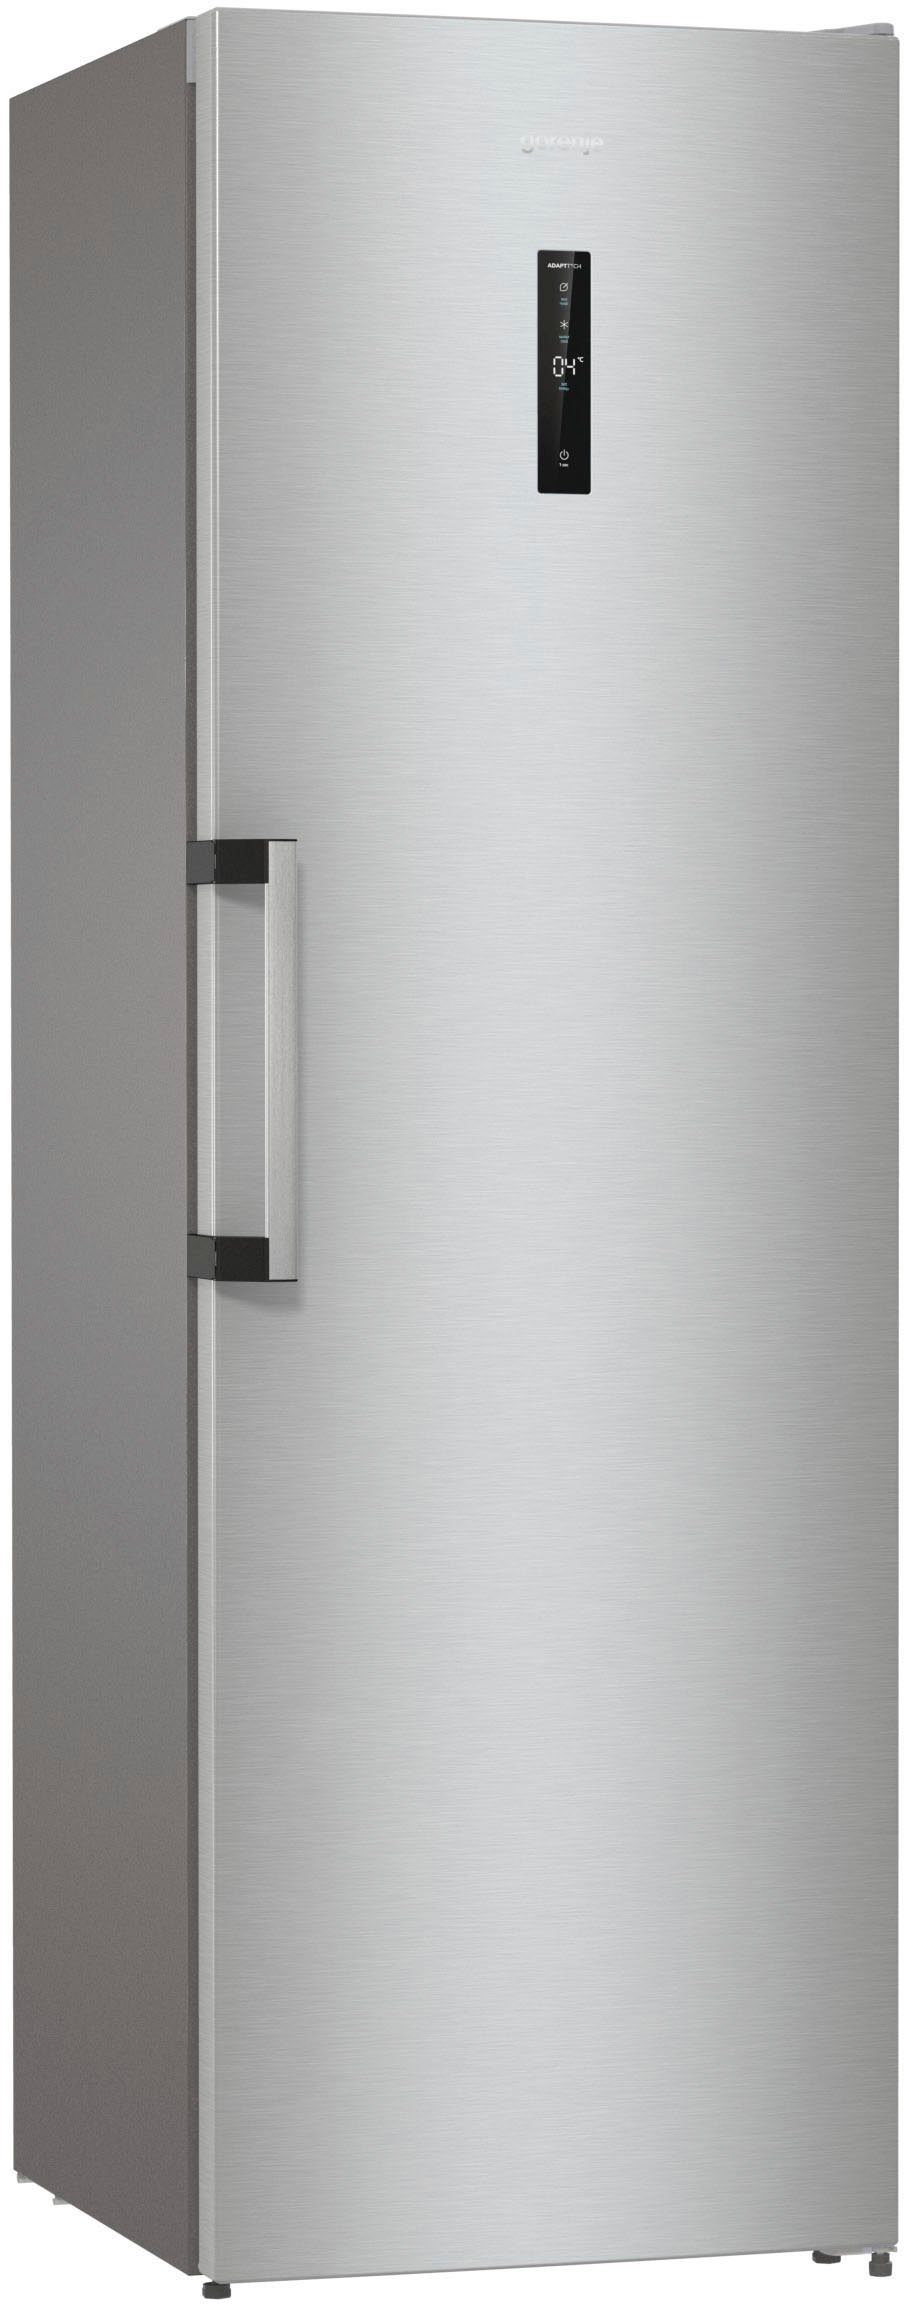 GORENJE Kühlschrank R619DAXL6, breit, cm cm QuickCooling-Funktion 185 59,5 hoch, Umluft-Kühlung mit